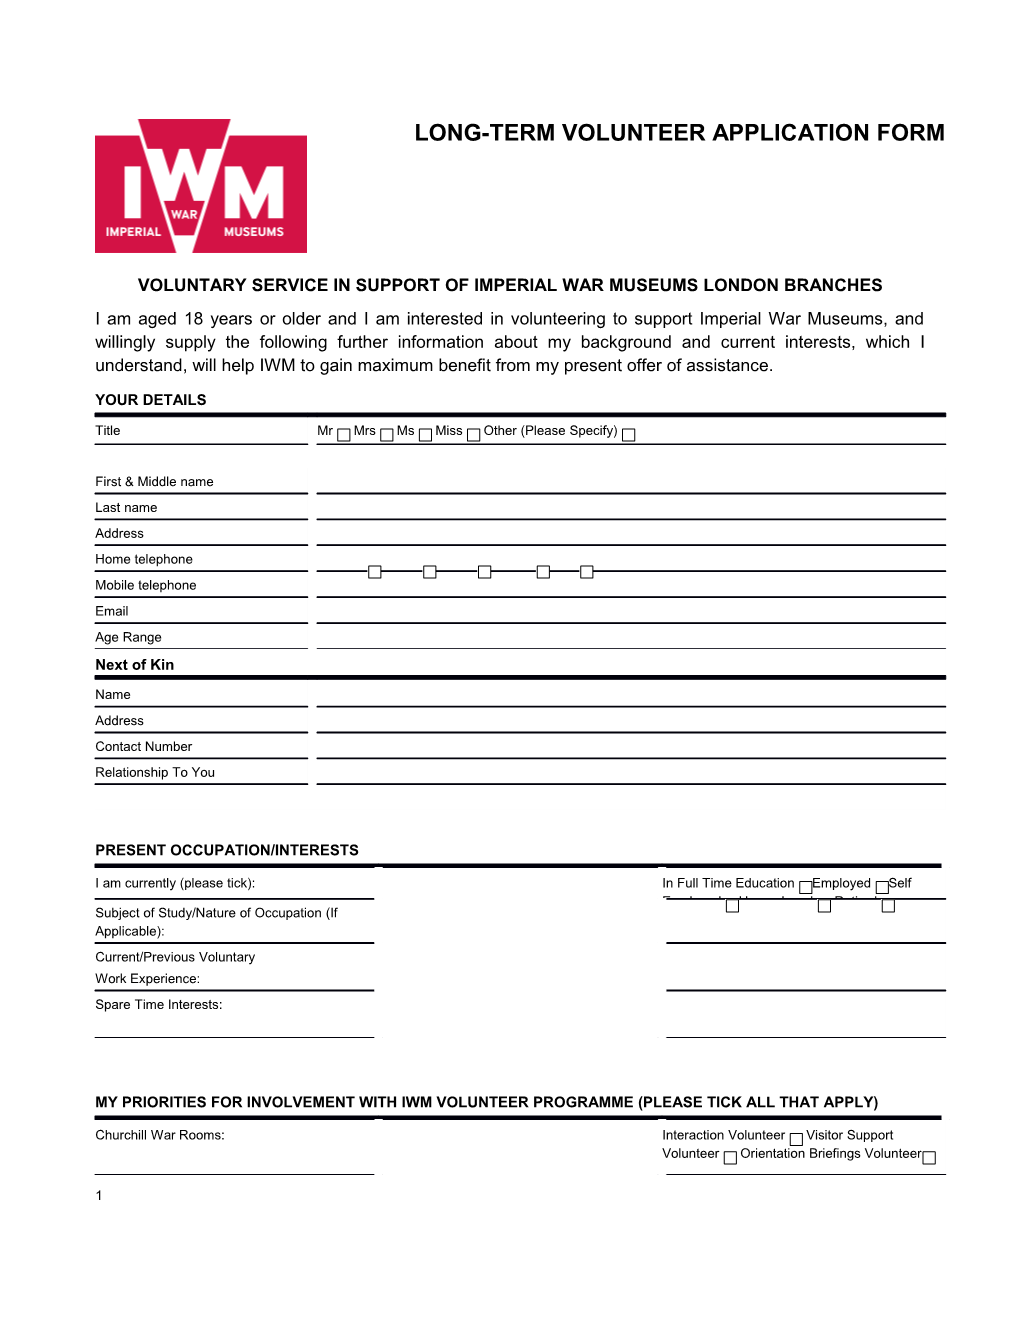 IWM Application Form